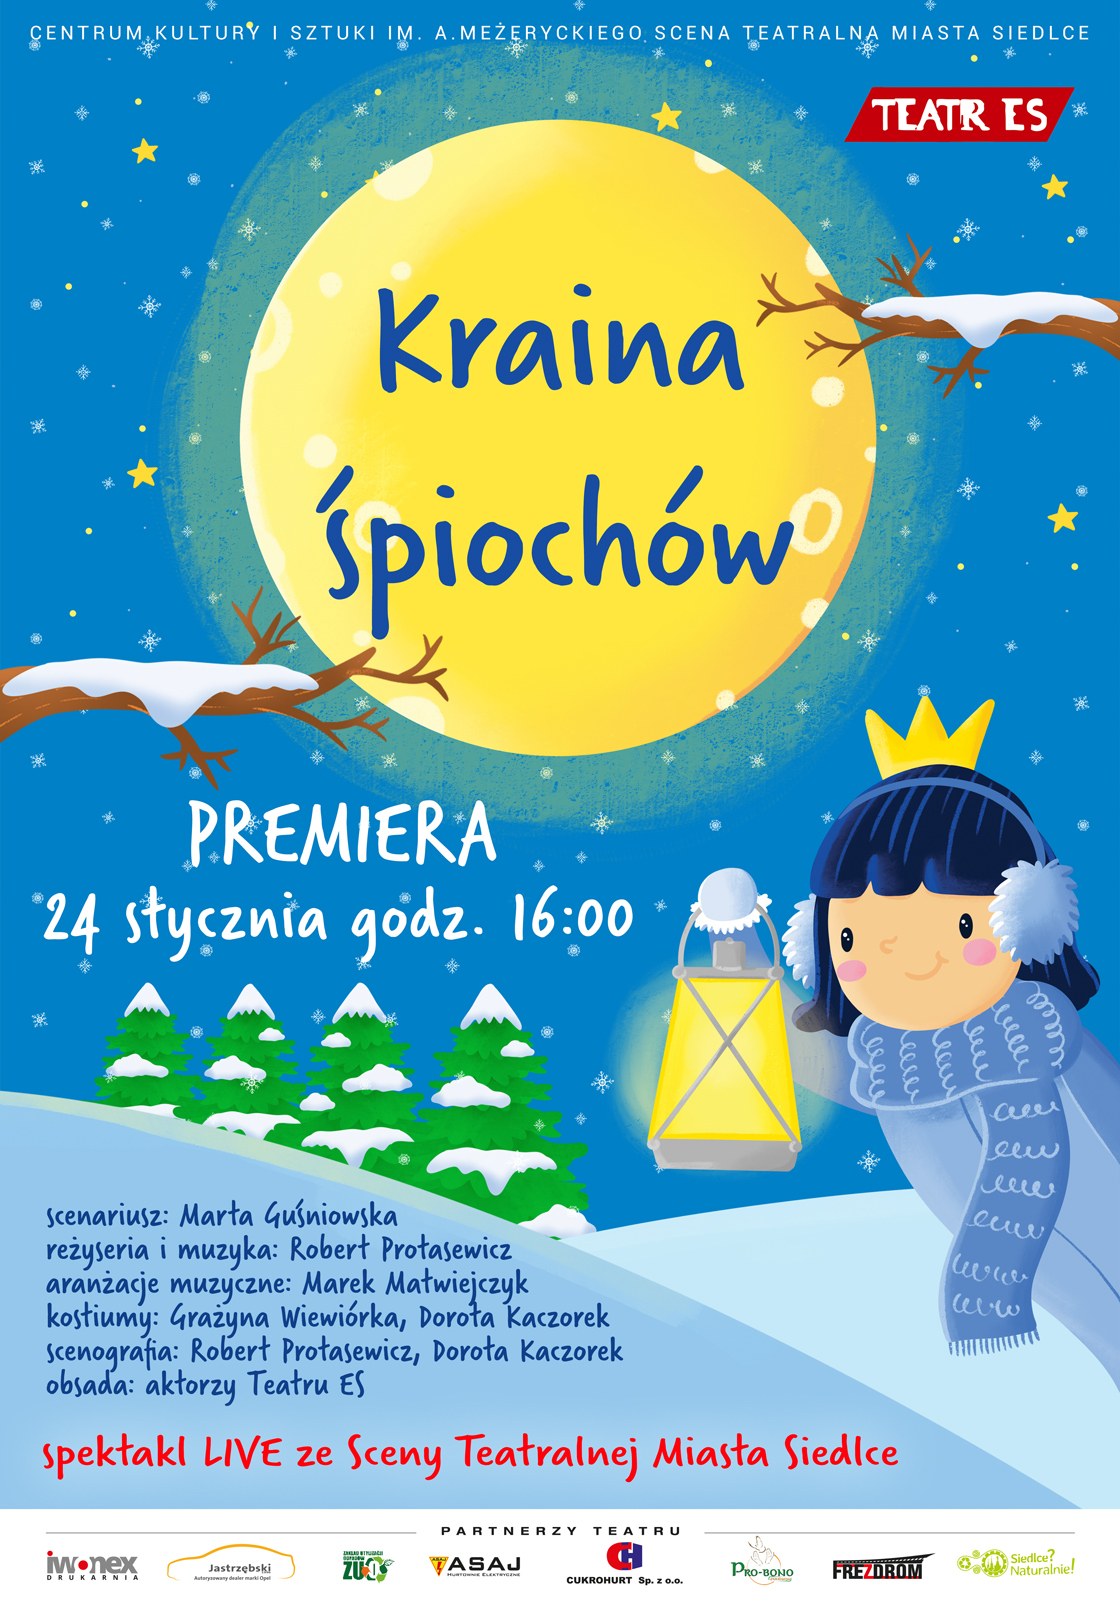 Premiera spektaklu "Kraina Śpiochów" już 24 stycznia na Scenie Teatralnej Miasta Siedlce